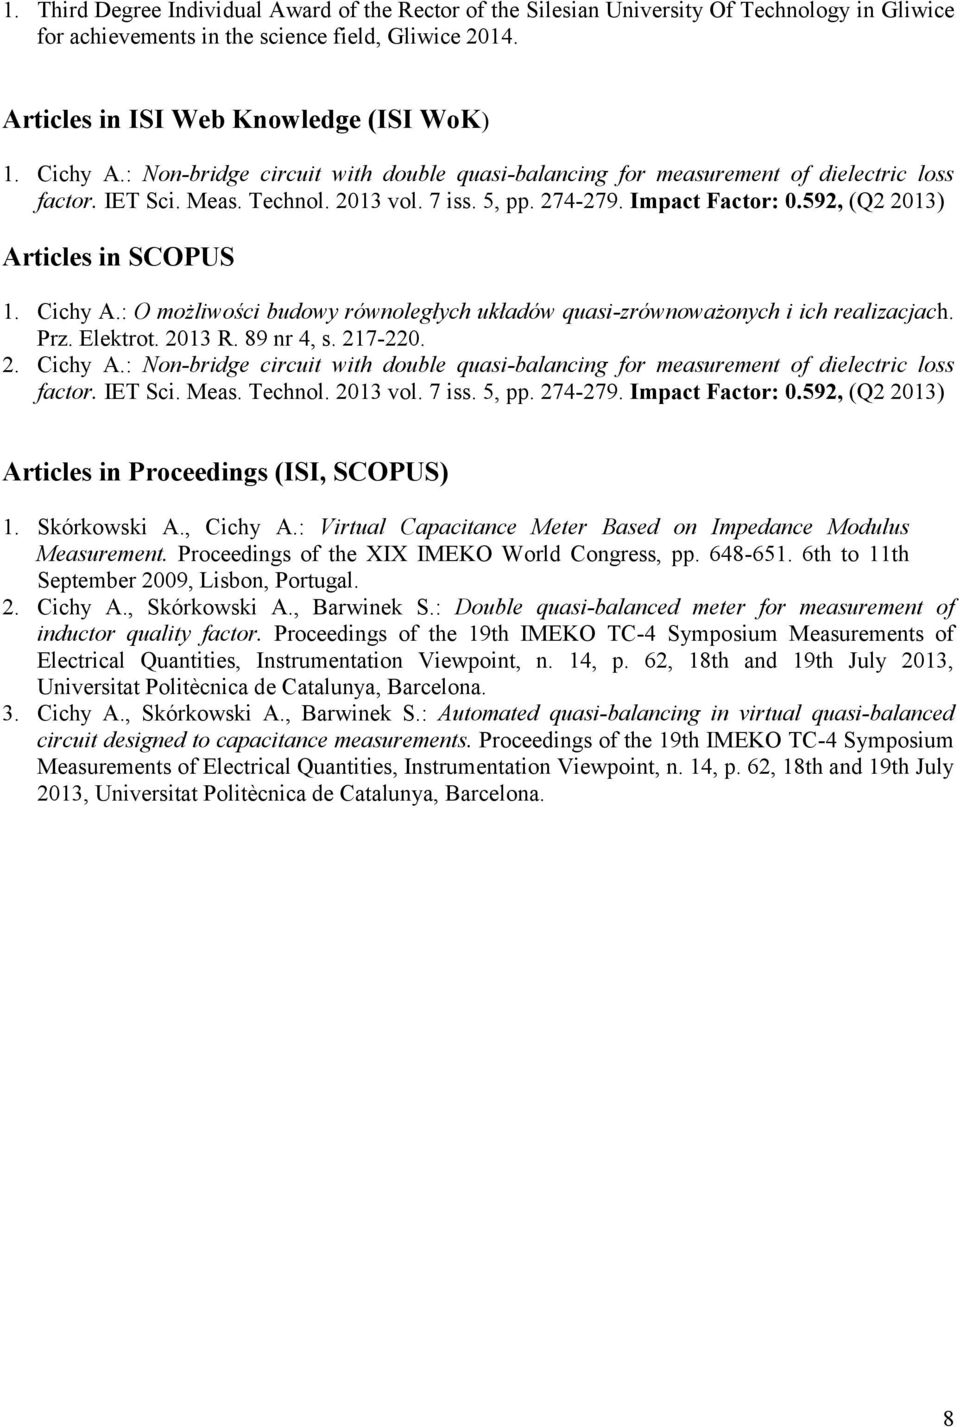 592, (Q2 2013) Articles in SCOPUS 1. Cichy A.: O możliwości budowy równoległych układów quasi-zrównoważonych i ich realizacjach. Prz. Elektrot. 2013 R. 89 nr 4, s. 217-220. 2. 592, (Q2 2013) Articles in Proceedings (ISI, SCOPUS) 1.